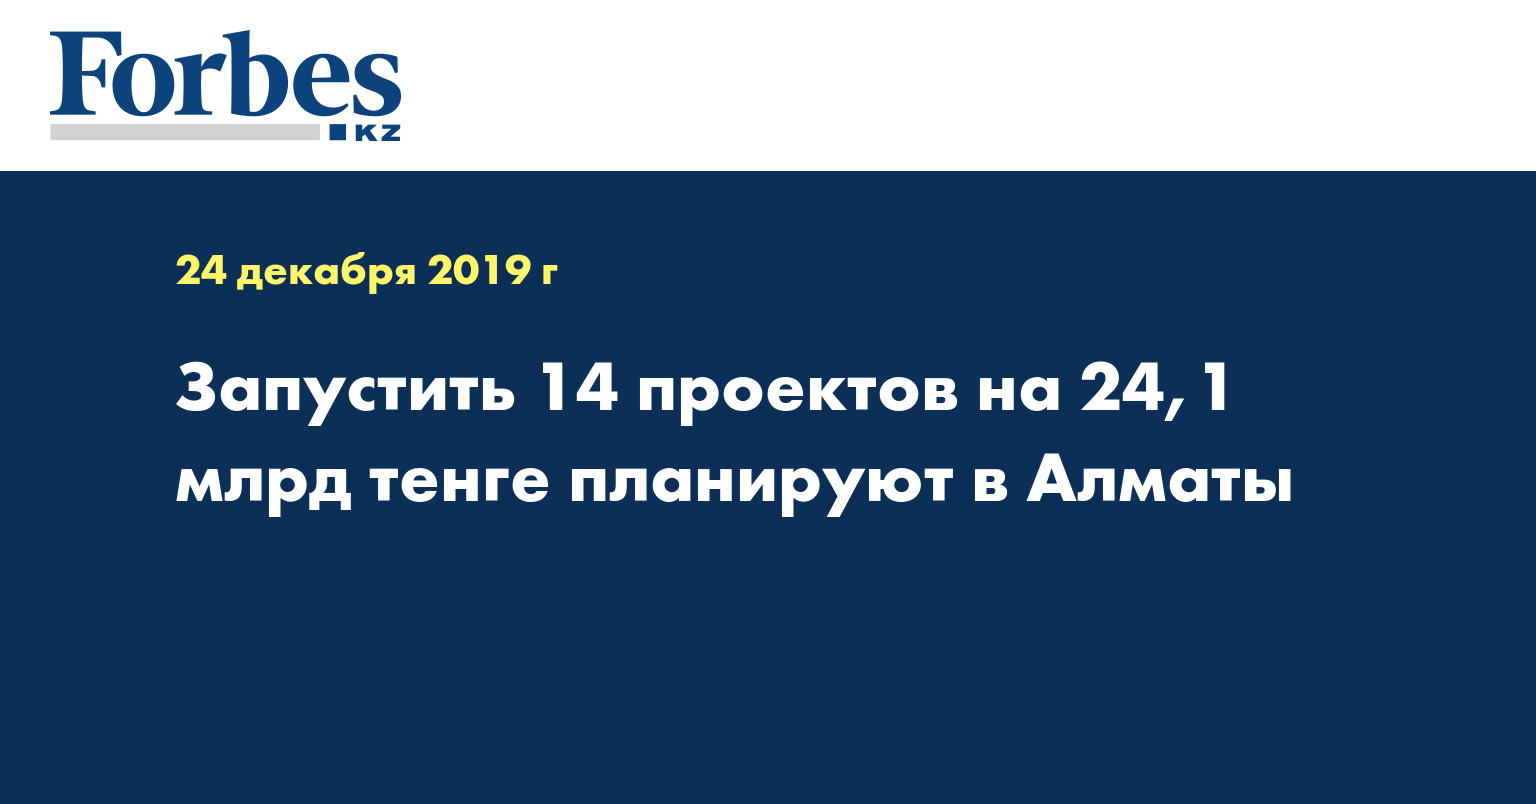 Запустить 14 проектов на 24,1 млрд тенге планируют в Алматы